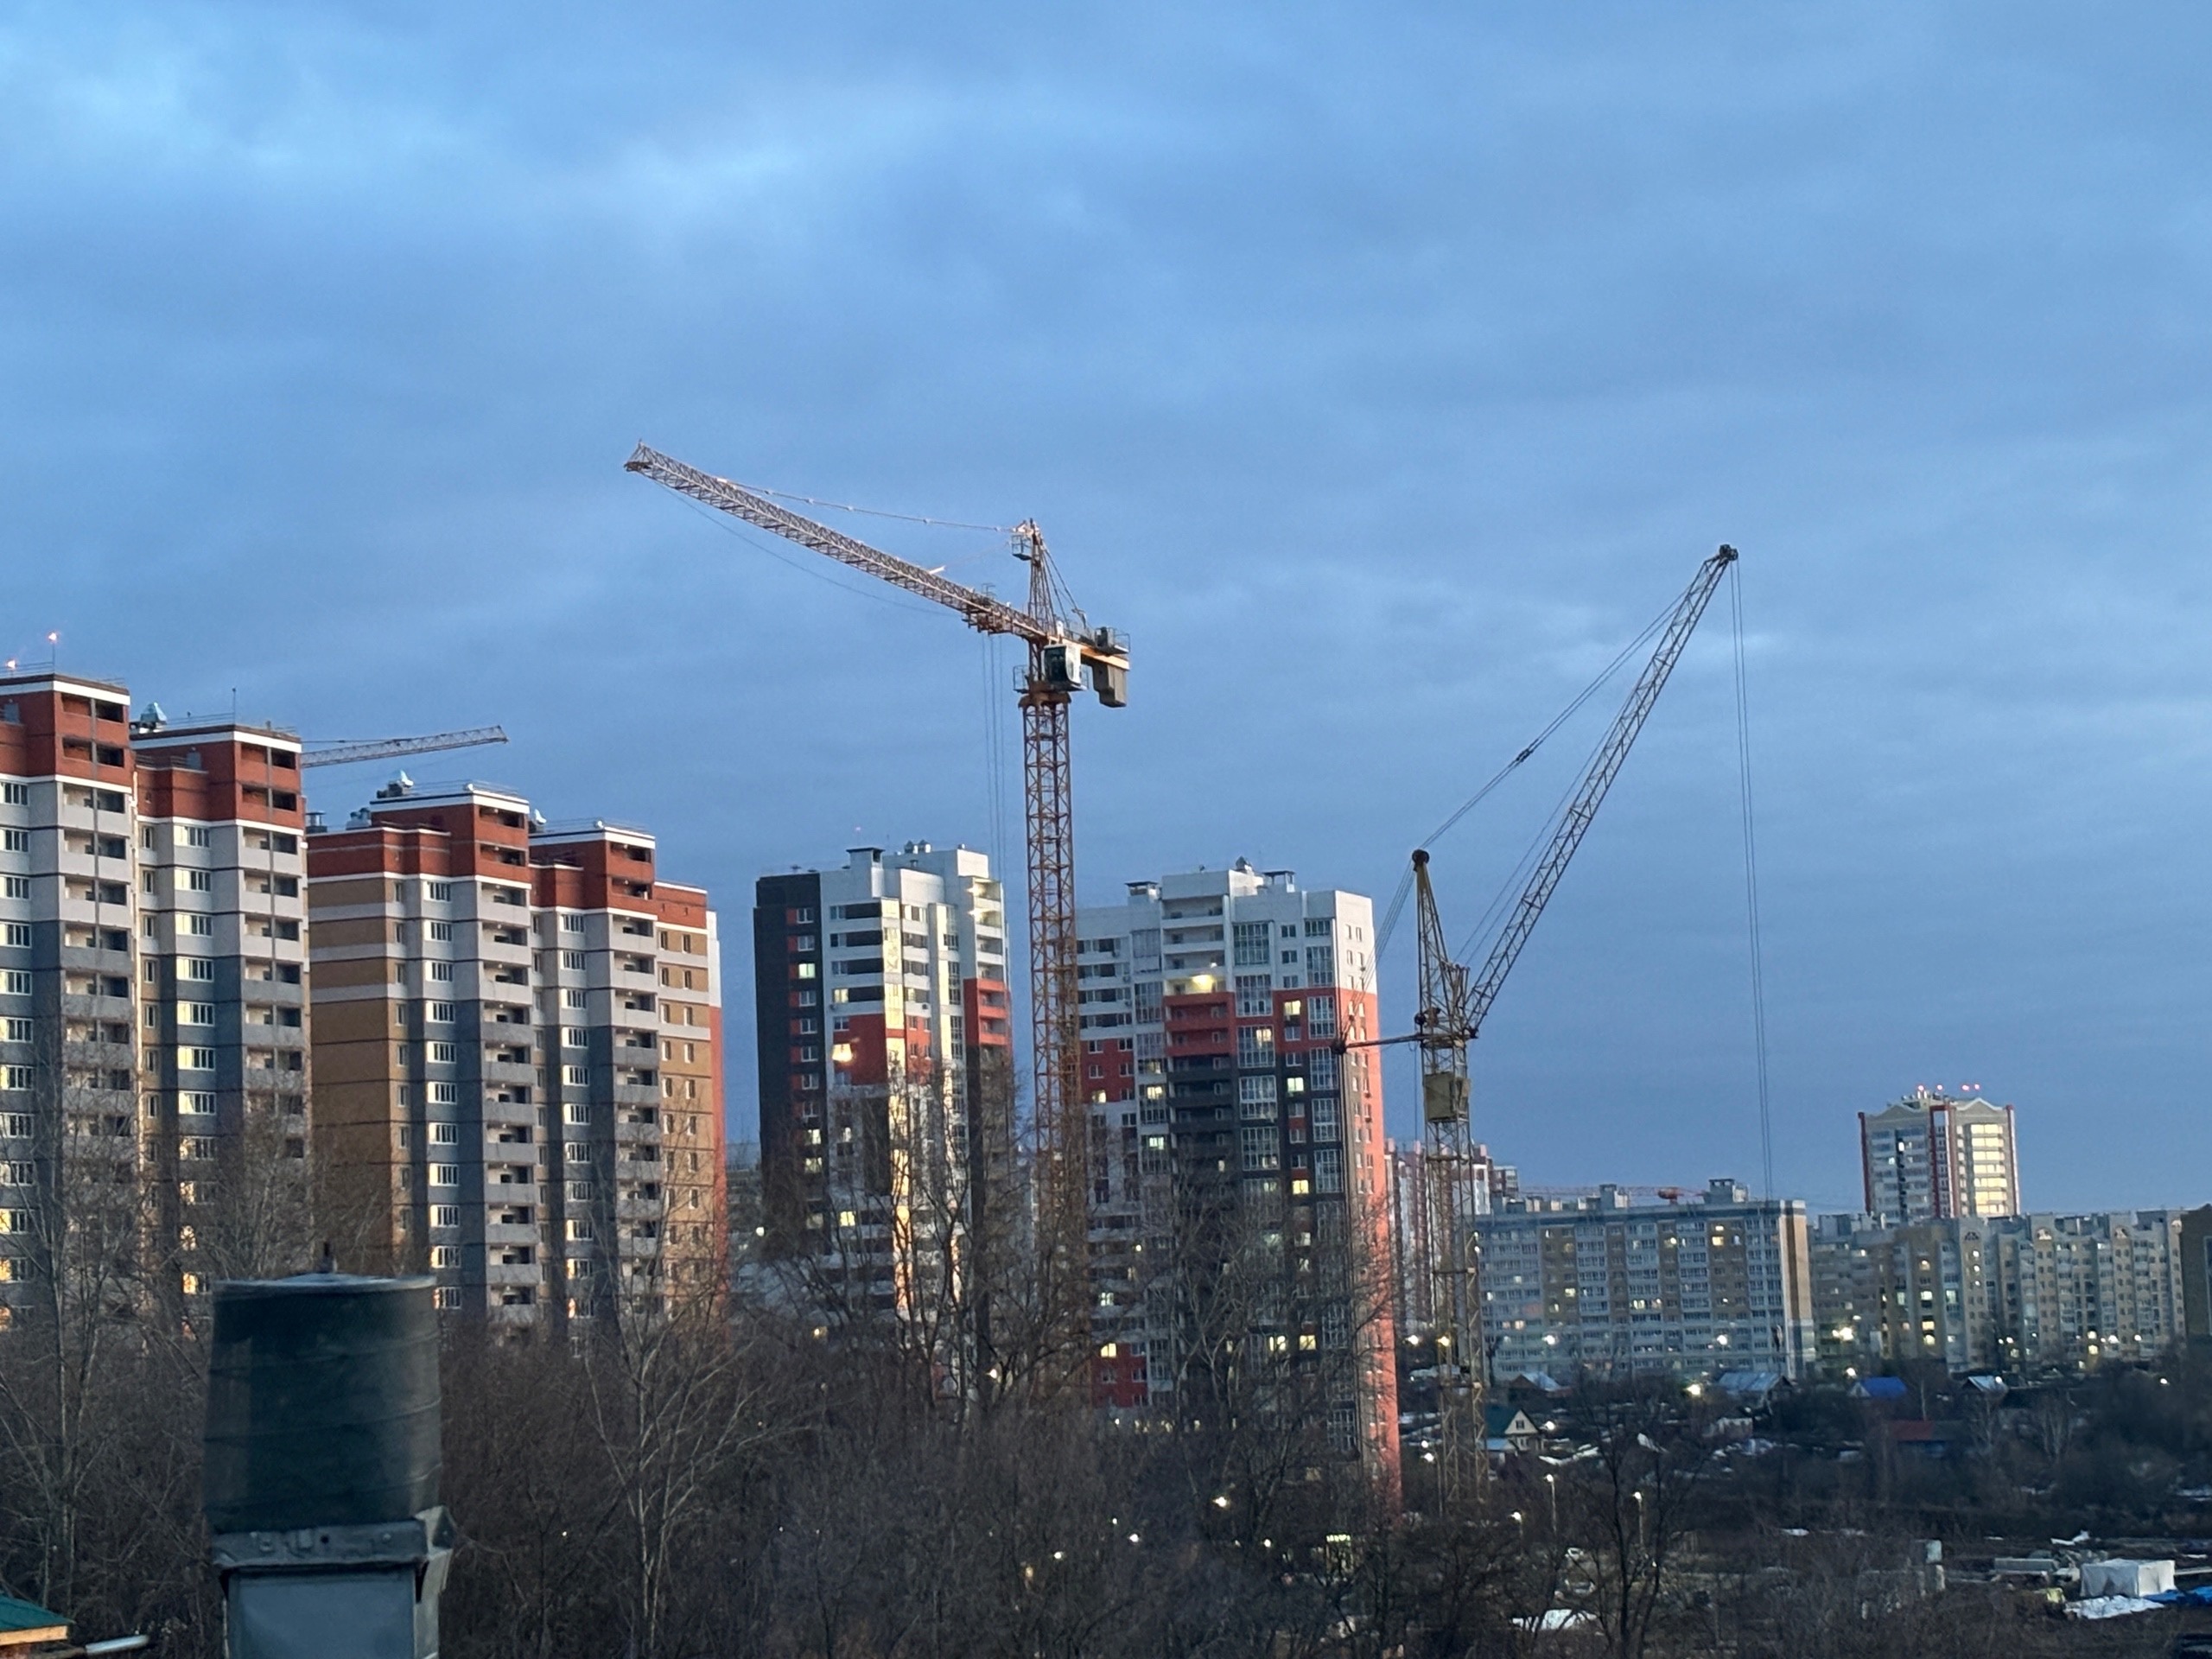 Квартиры в Чебоксарах могут принести больше денег, чем в Казани или Москве